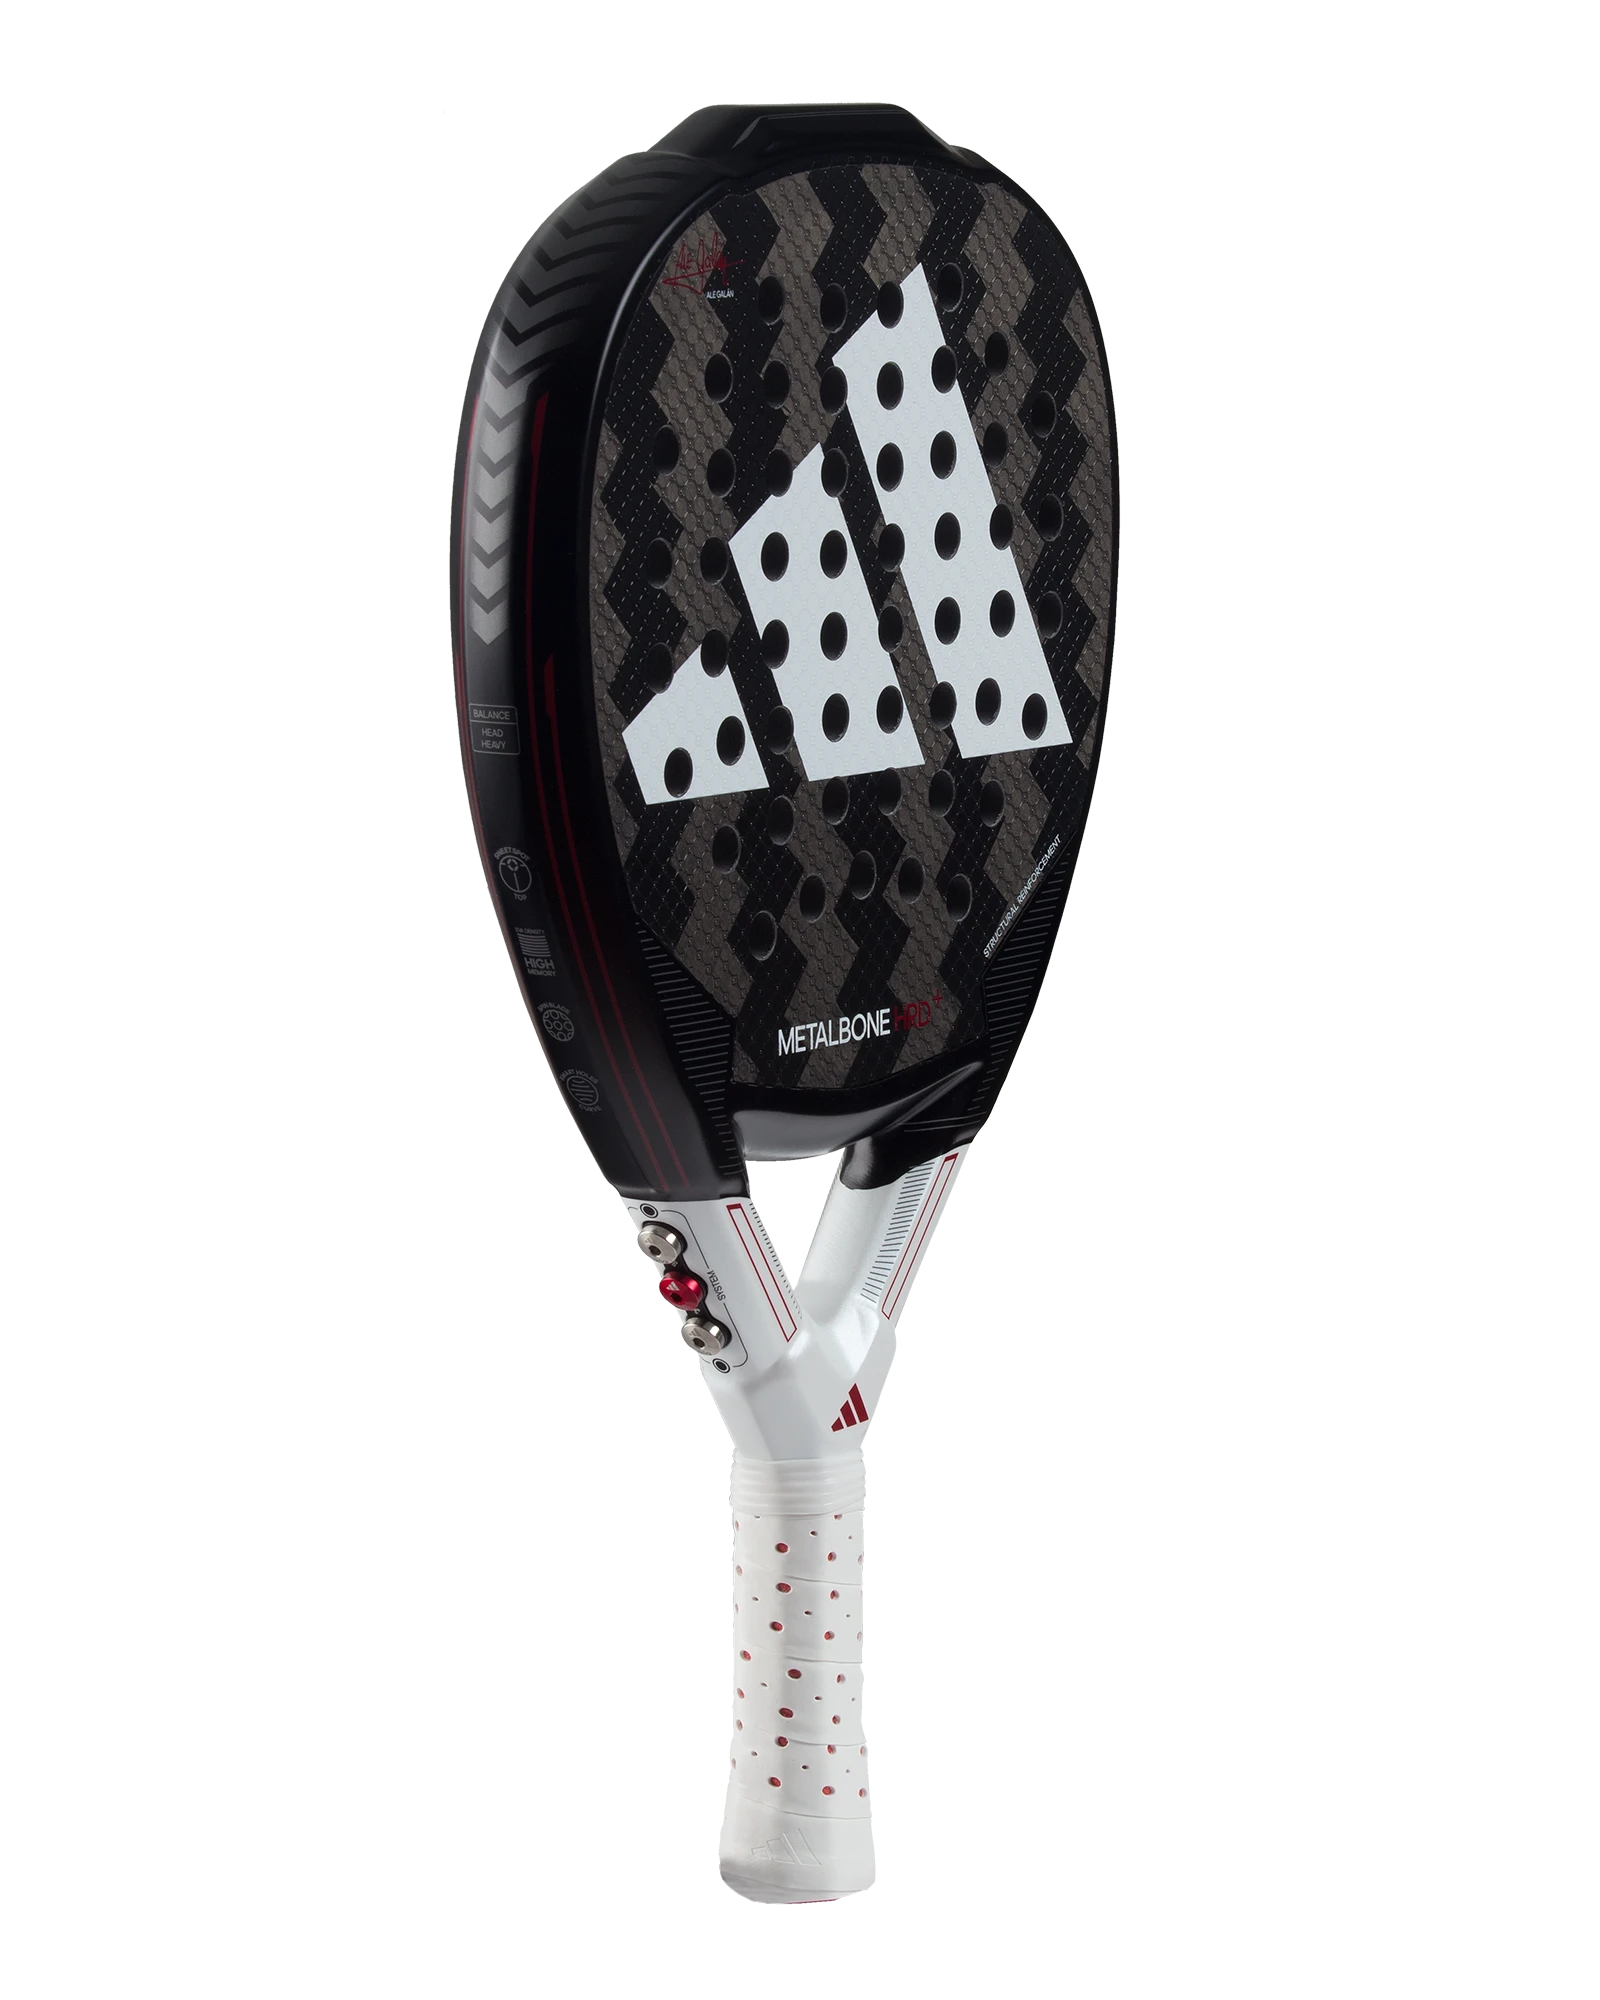  The Adidas Metalbone HRD 2024 Padel Racket